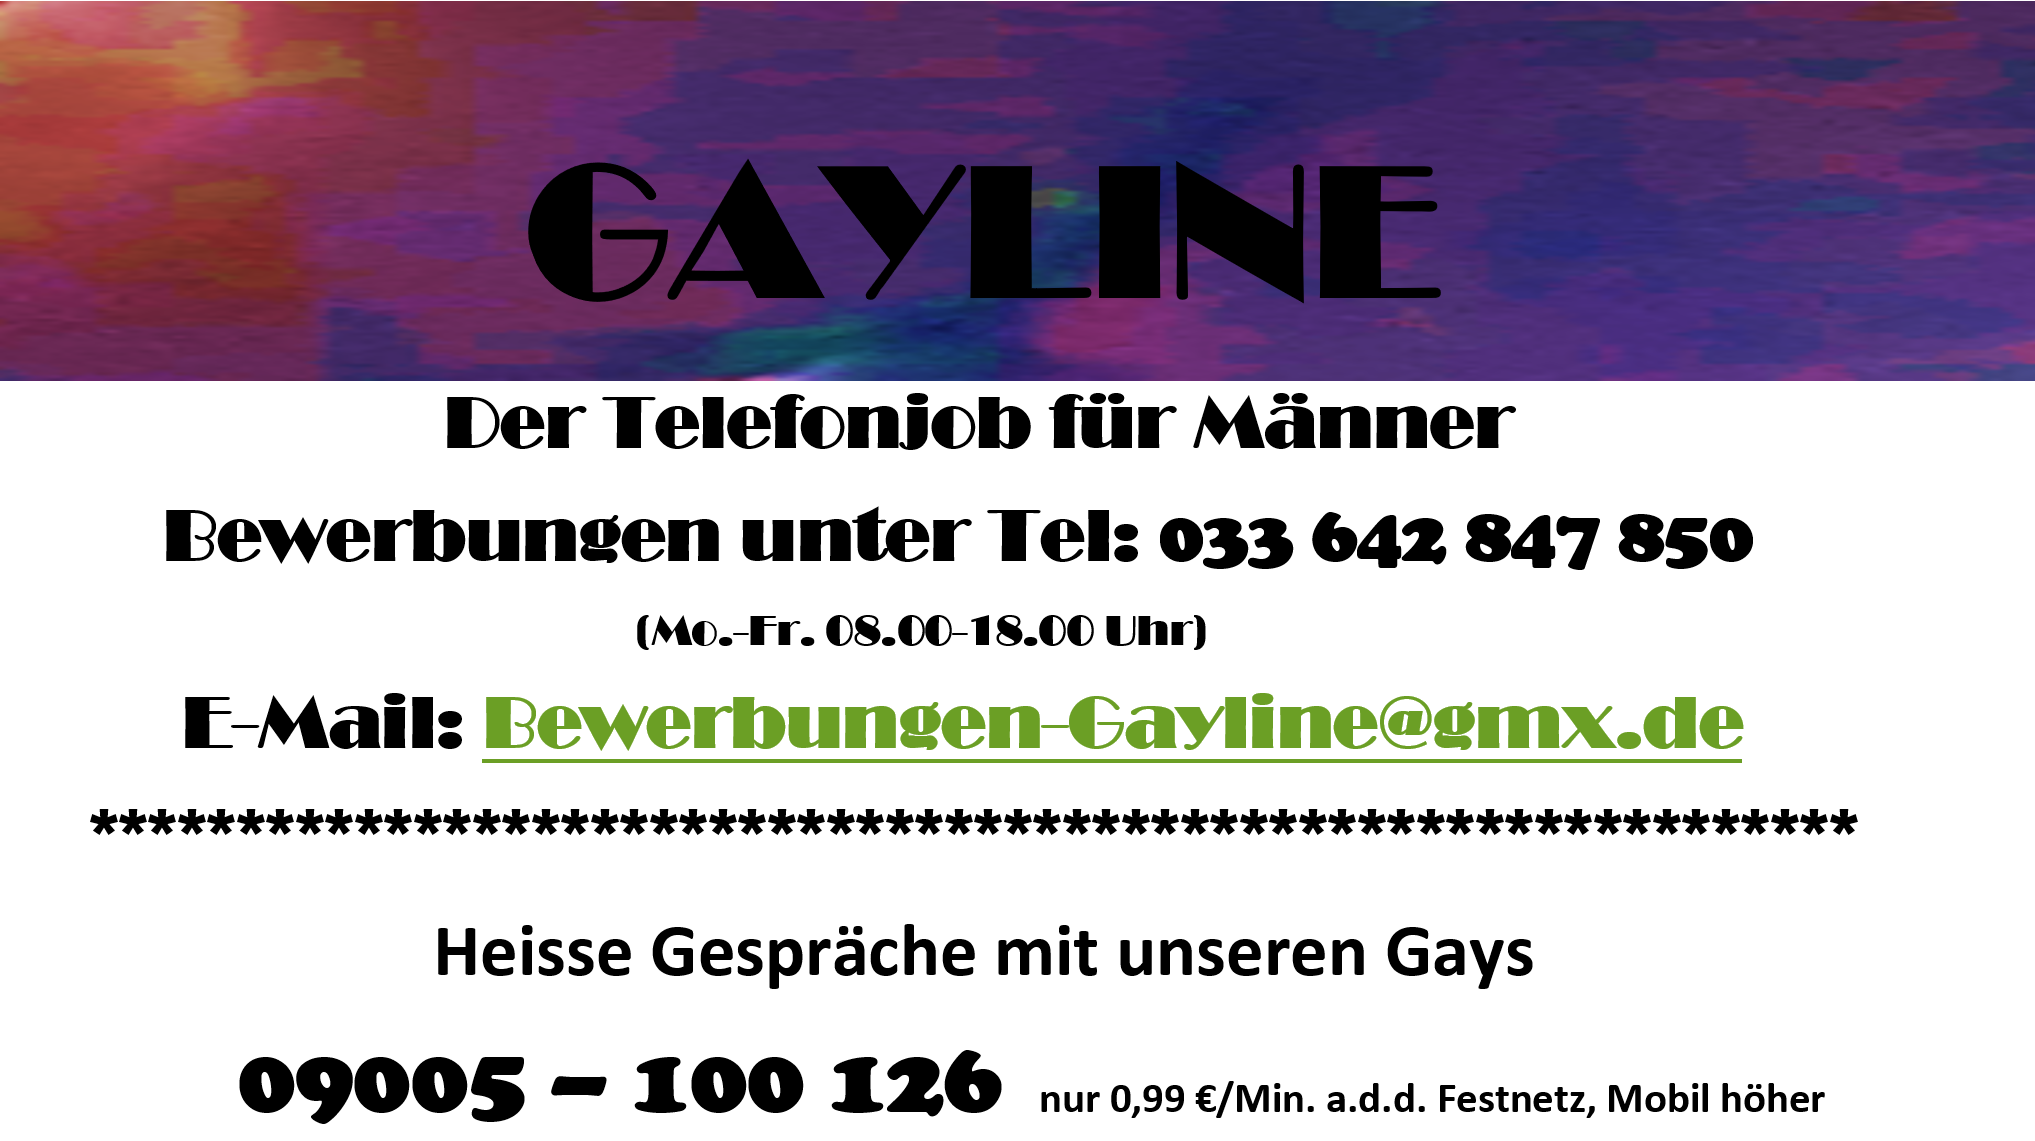 Gayline Jobs Arbeit auf Gayline Telefonistin Jobangebot Nebenjob telefonieren Arbeit für Männer am Telefon